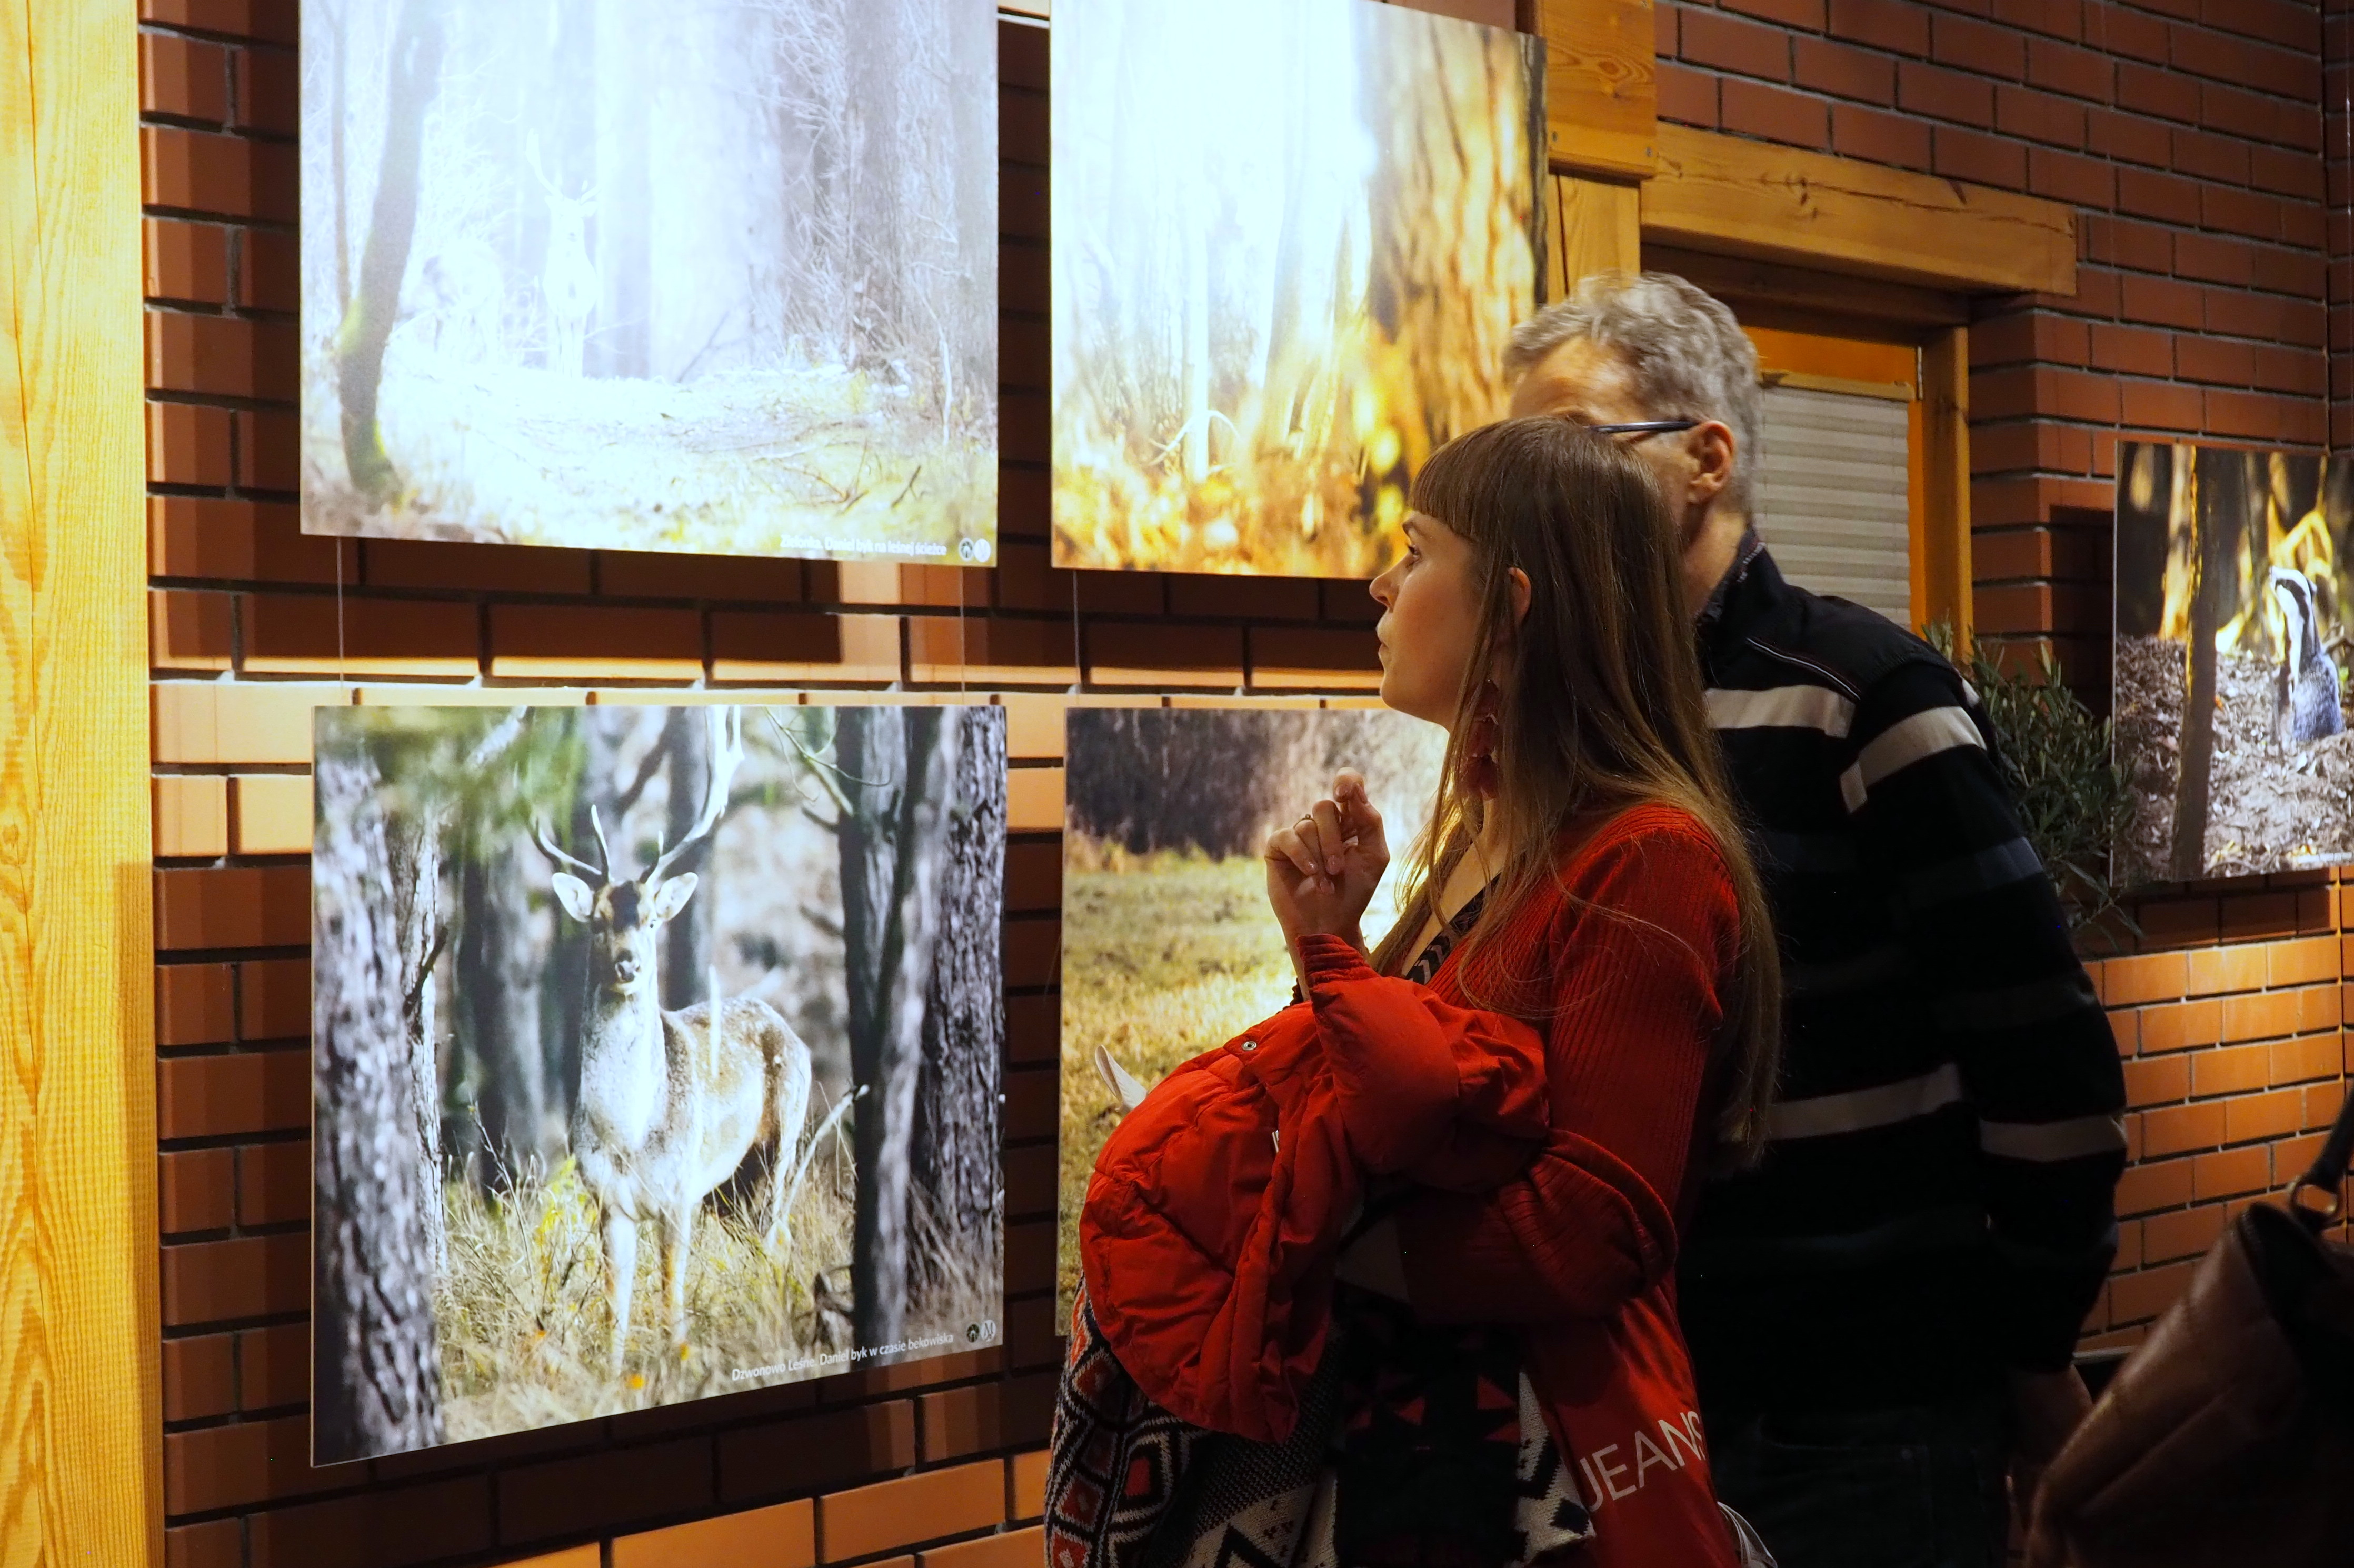 Zdjęcie przedstawia uczestników wernisażu podczas oglądania wystawy. Fot. P. Kaźmierczak